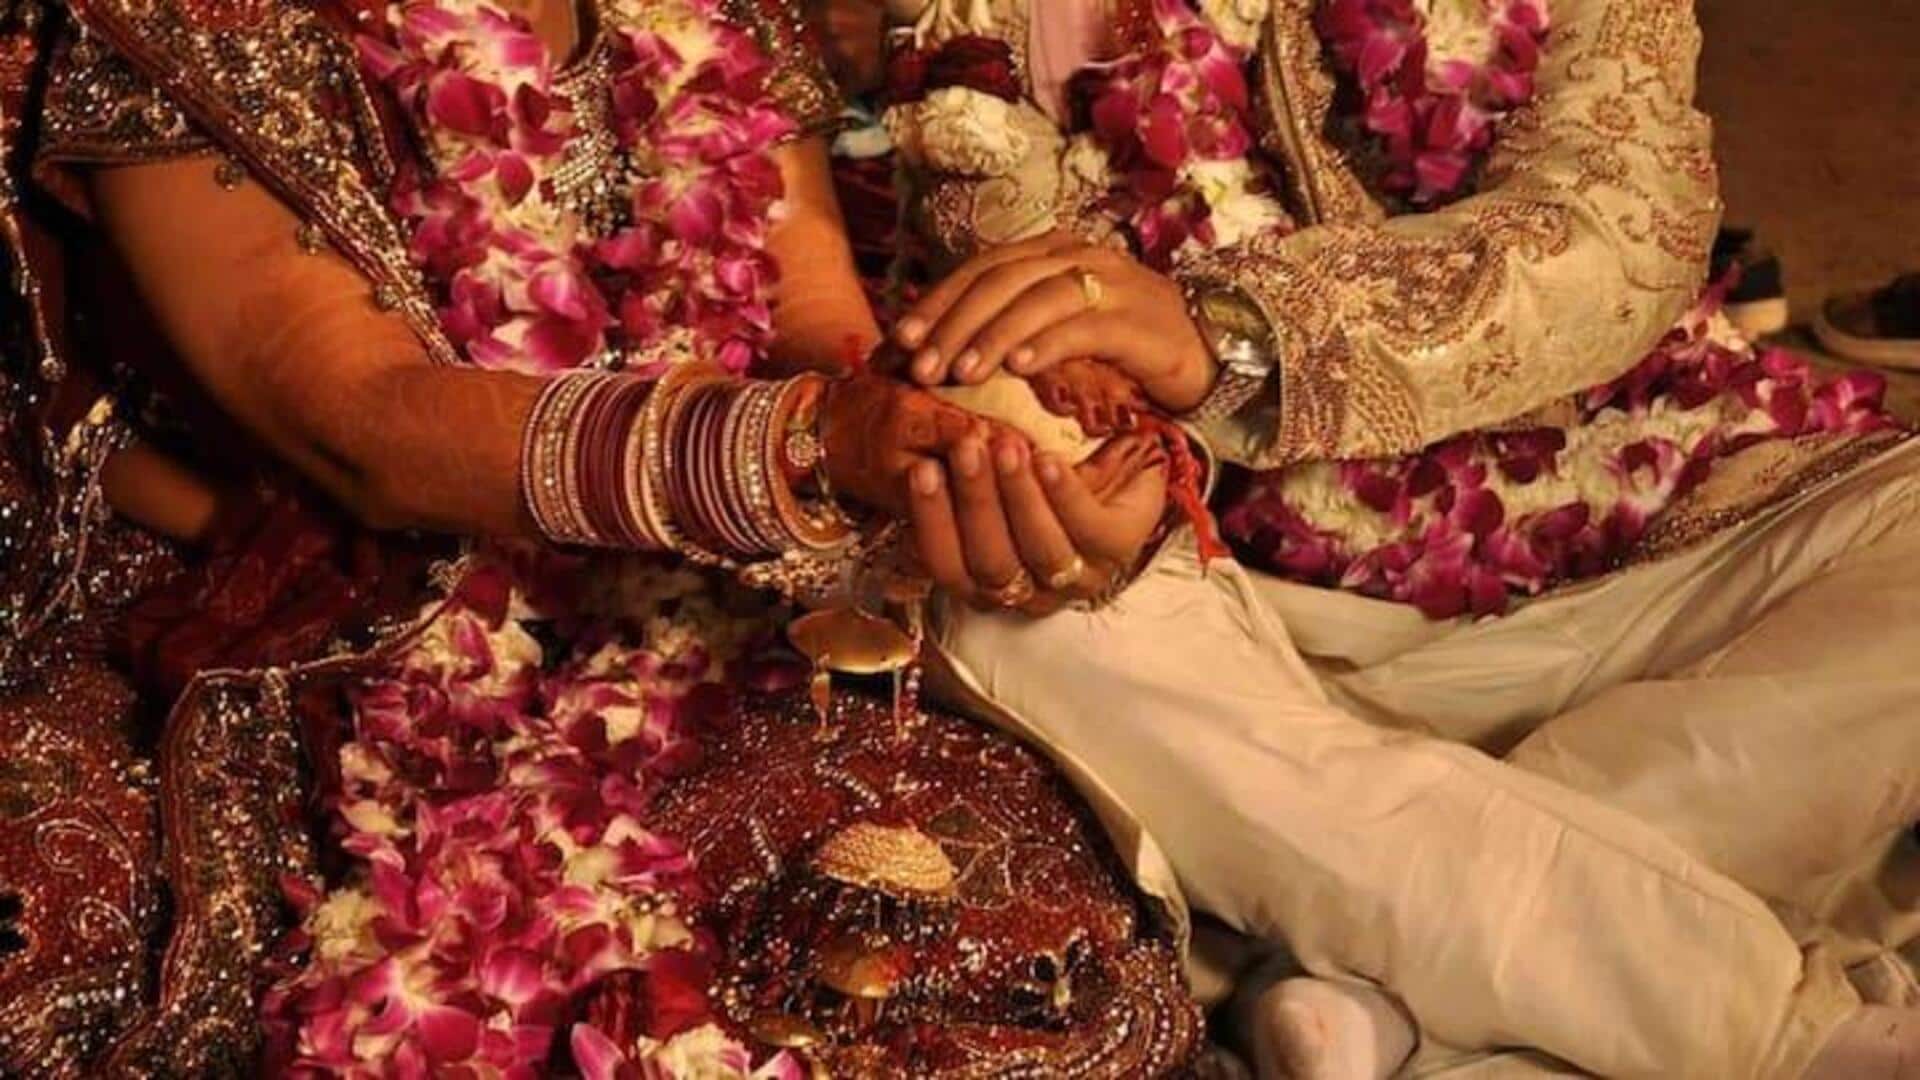 Uttar Pradesh: Wedding celebration turns violent after groom kisses bride